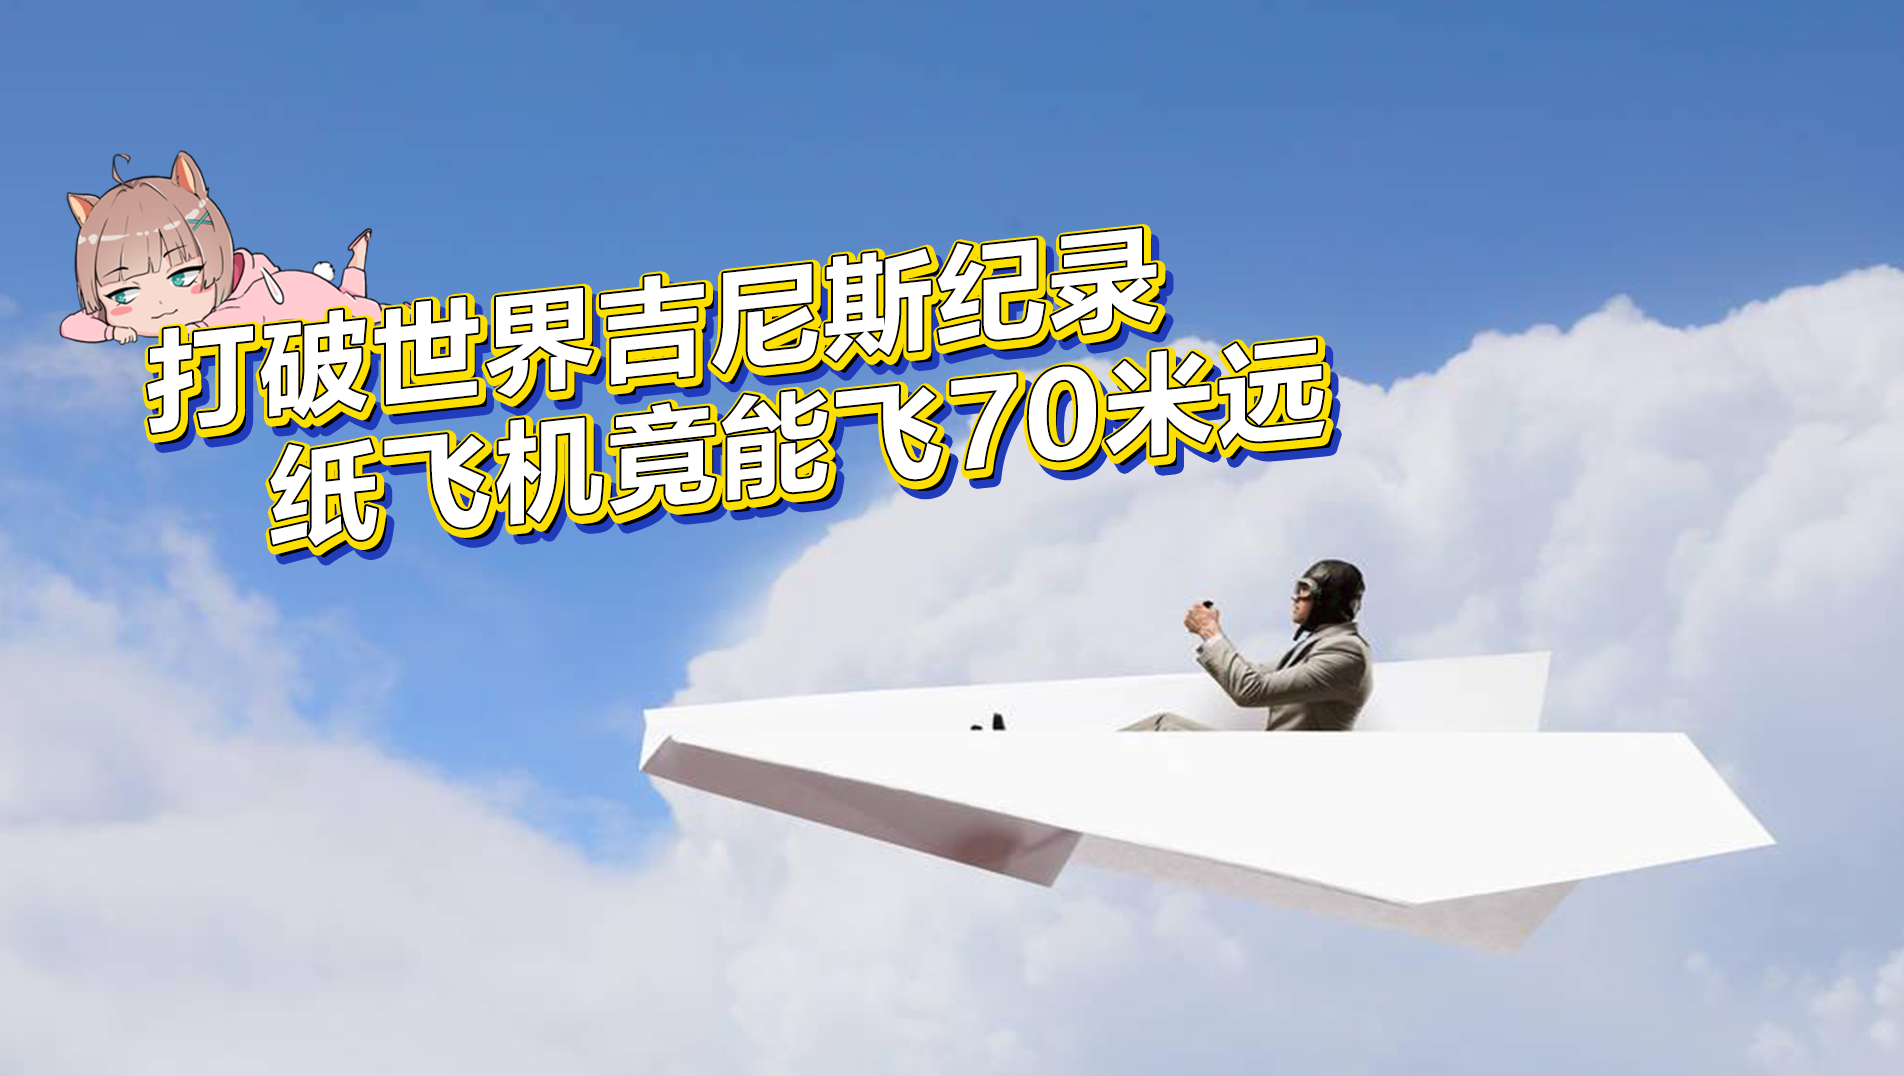 打破世界吉尼斯纪录，纸飞机竟能飞70米远